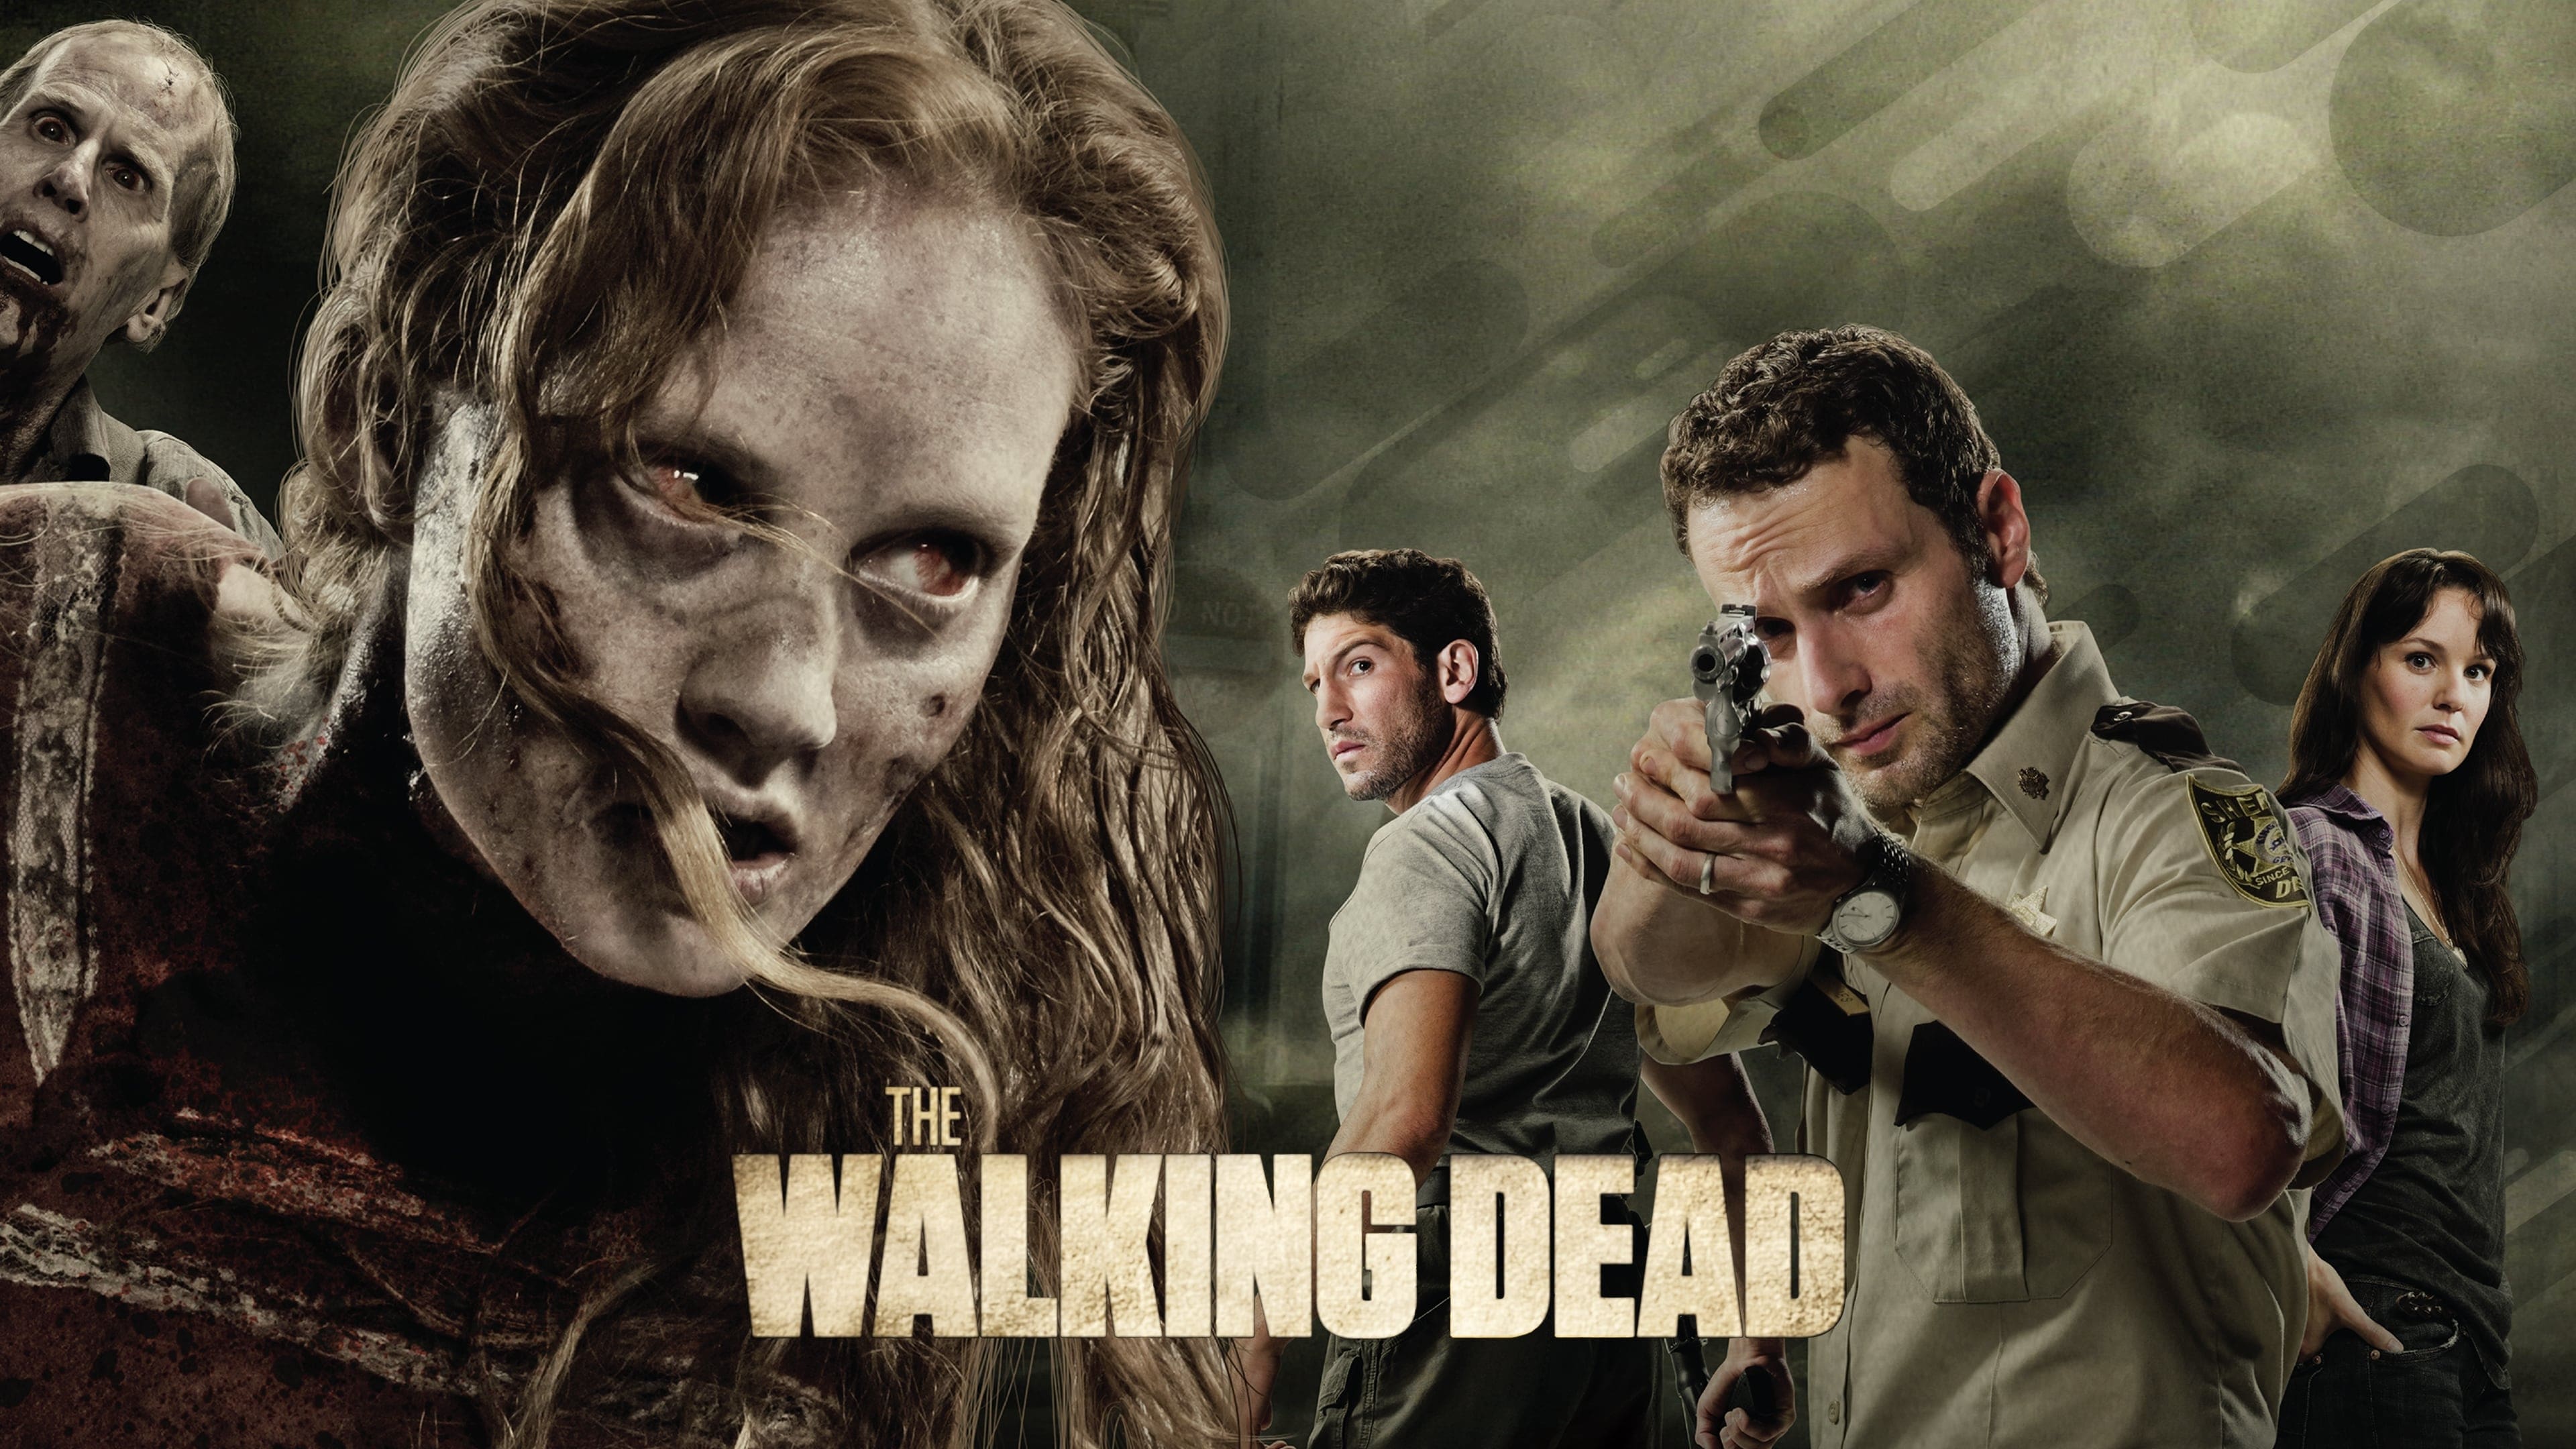 The Walking Dead - Season 8 Episode 10